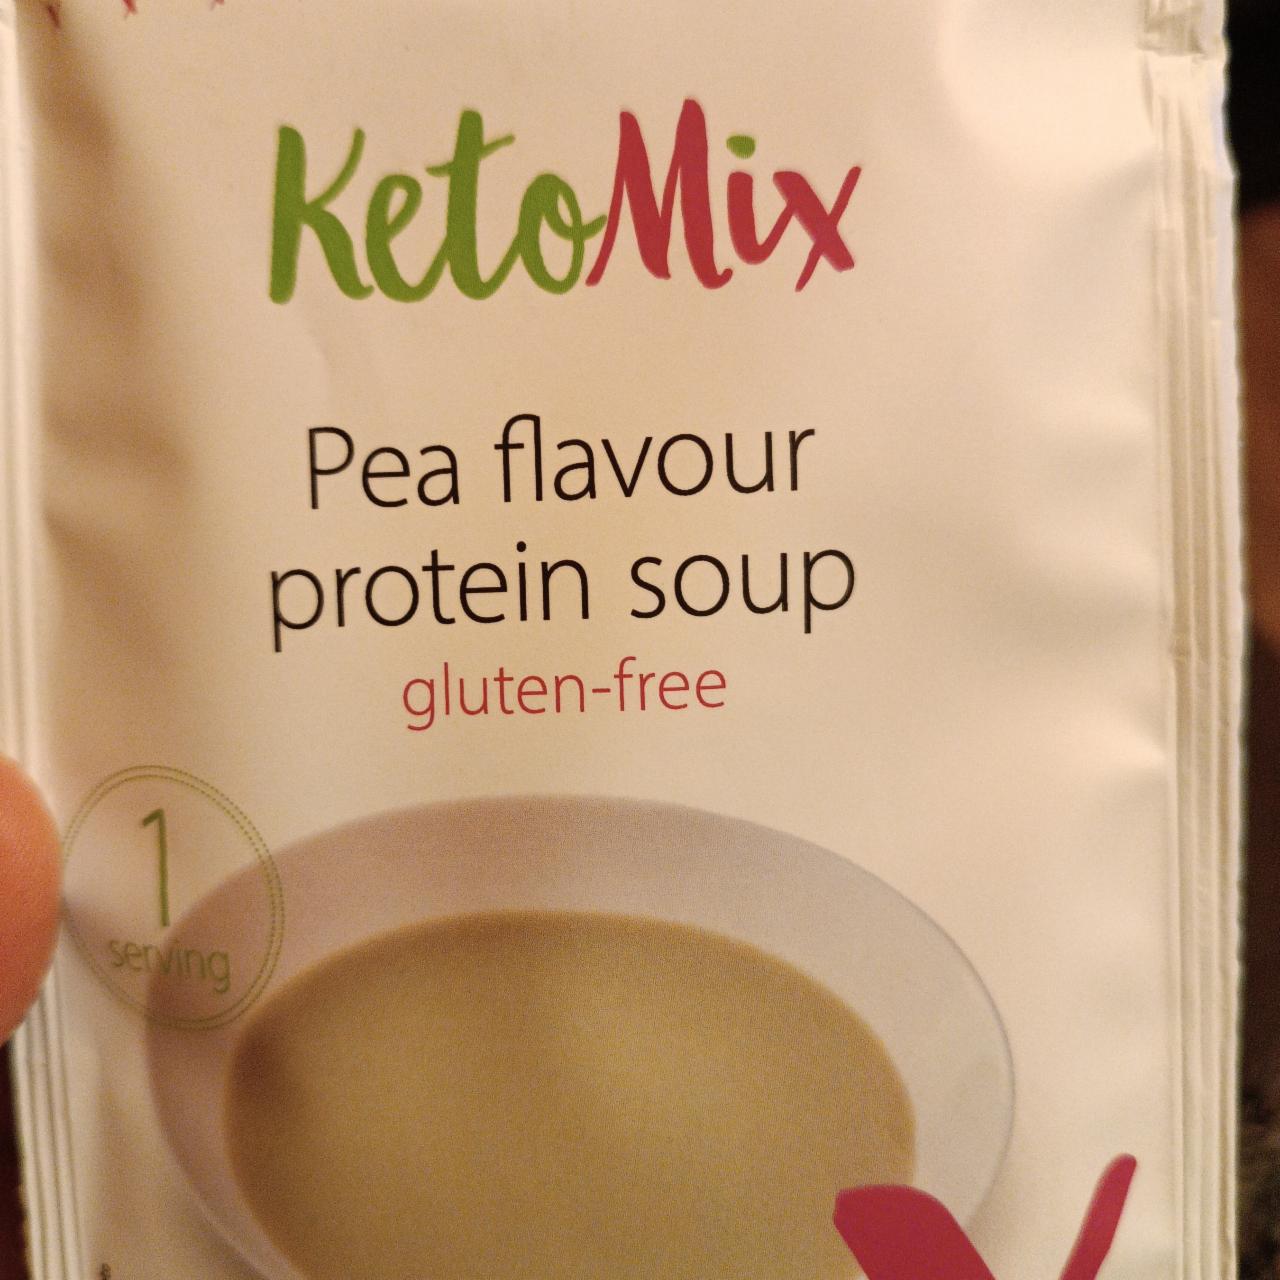 Fotografie - Pea flavour protein soup KetoMix